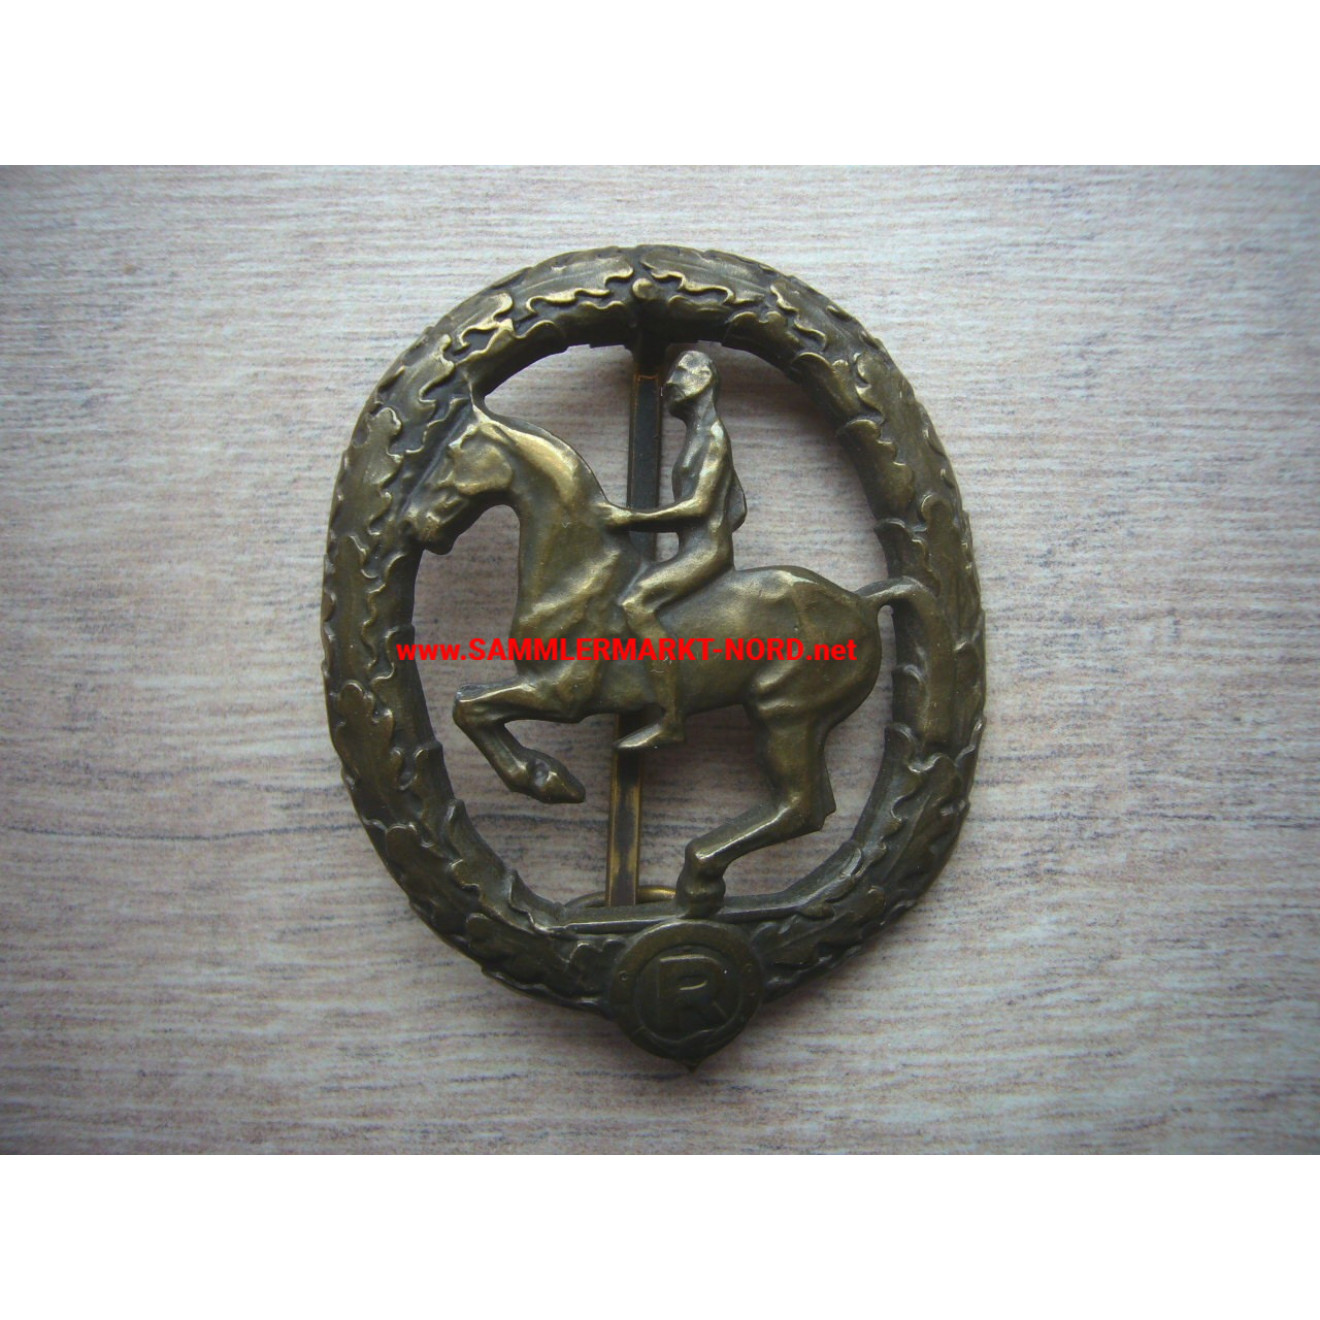 Deutsches Reiterabzeichen in Bronze - Buntmetall